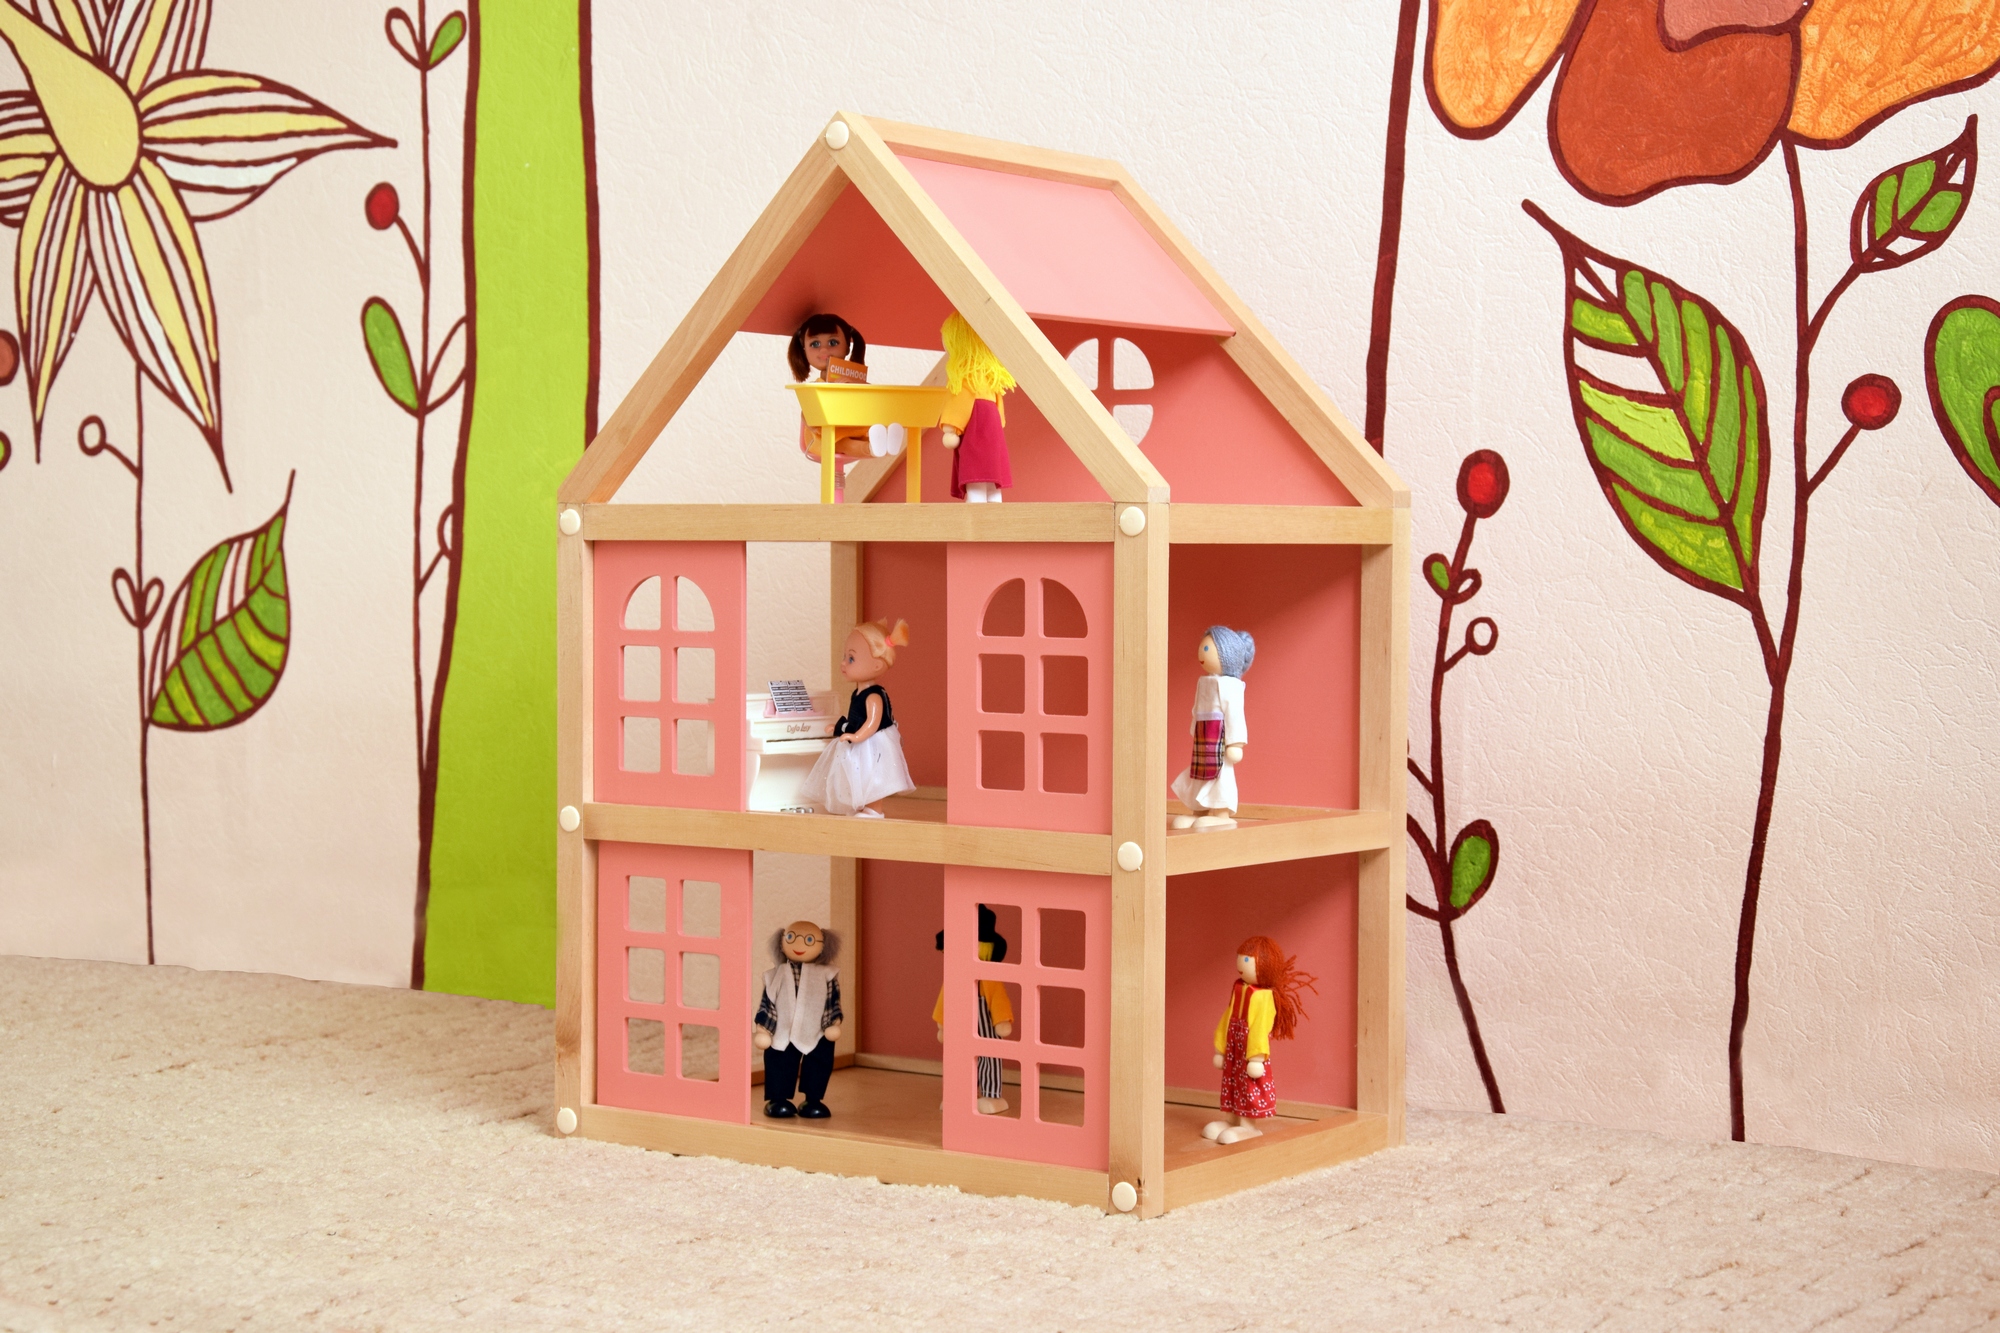 Кукольный домик для Барби СИЯНИЕ KidKraft № 16778